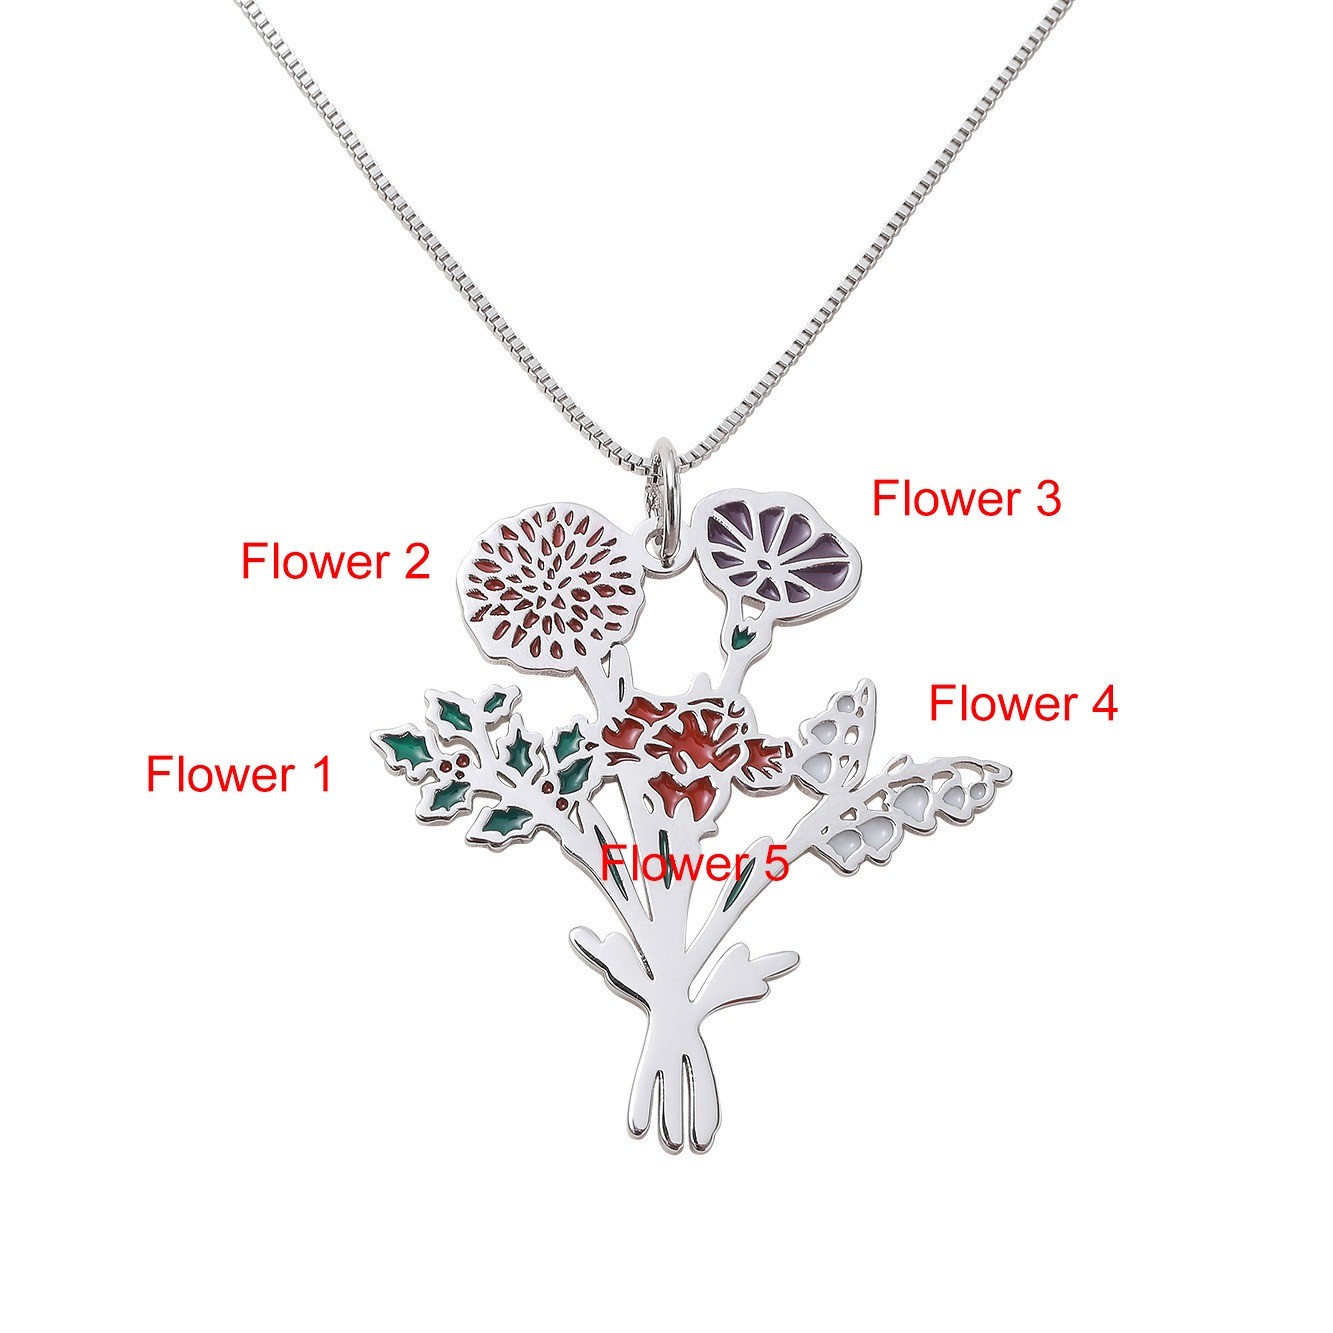 Aangepaste geboorte bloemen boeket ketting, sterling zilver 925 bloemen sieraden, Moederdag/verjaardagscadeau voor moeder/oma van dochter/kleindochter